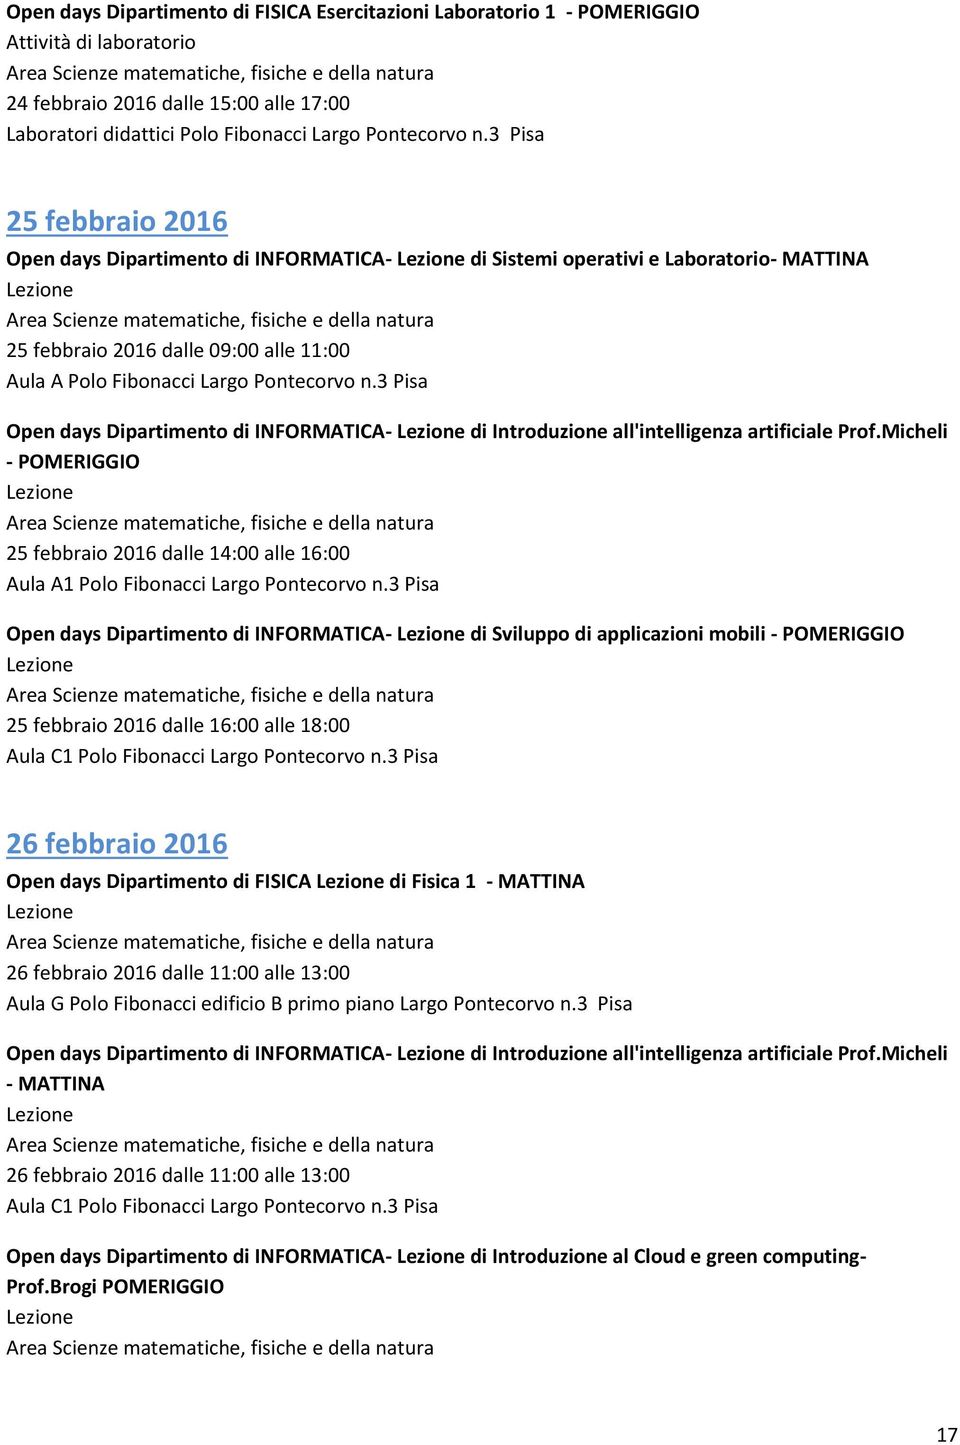 3 Pisa Open days Dipartimento di INFORMATICA- di Introduzione all'intelligenza artificiale Prof.Micheli - POMERIGGIO 25 febbraio 2016 dalle 14:00 alle 16:00 Aula A1 Polo Fibonacci Largo Pontecorvo n.